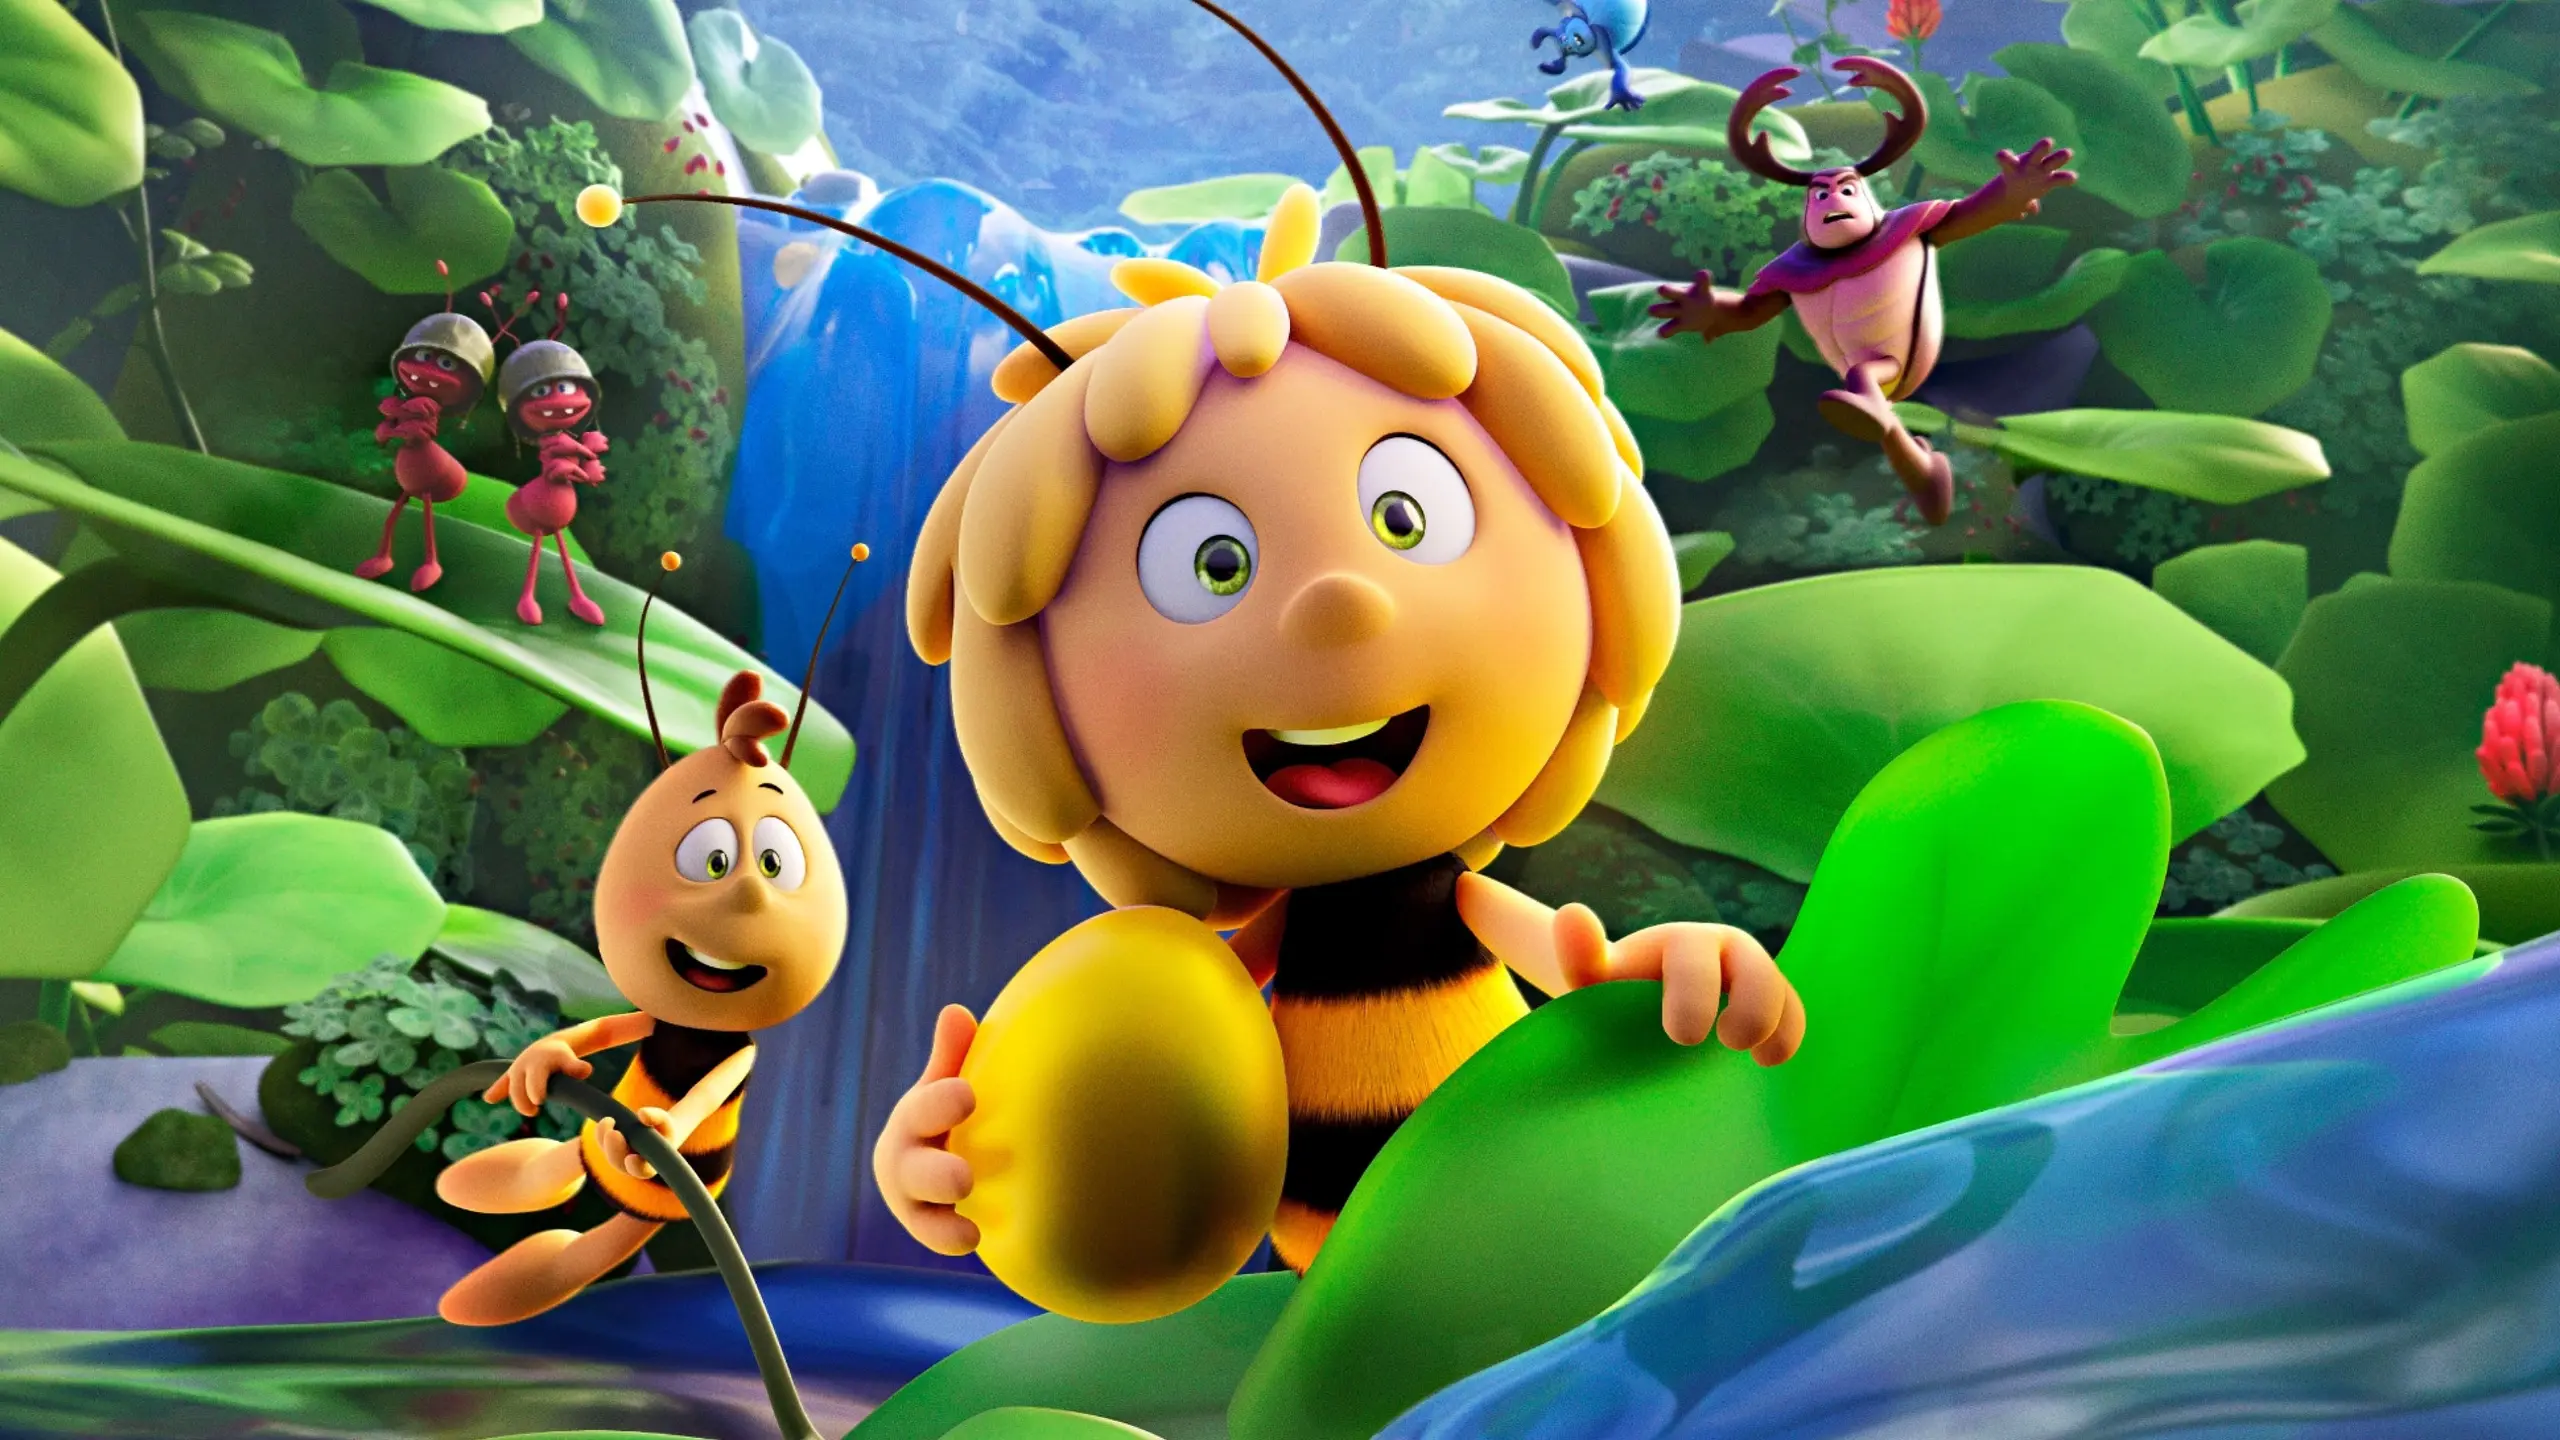 Die Biene Maja - Das geheime Königreich